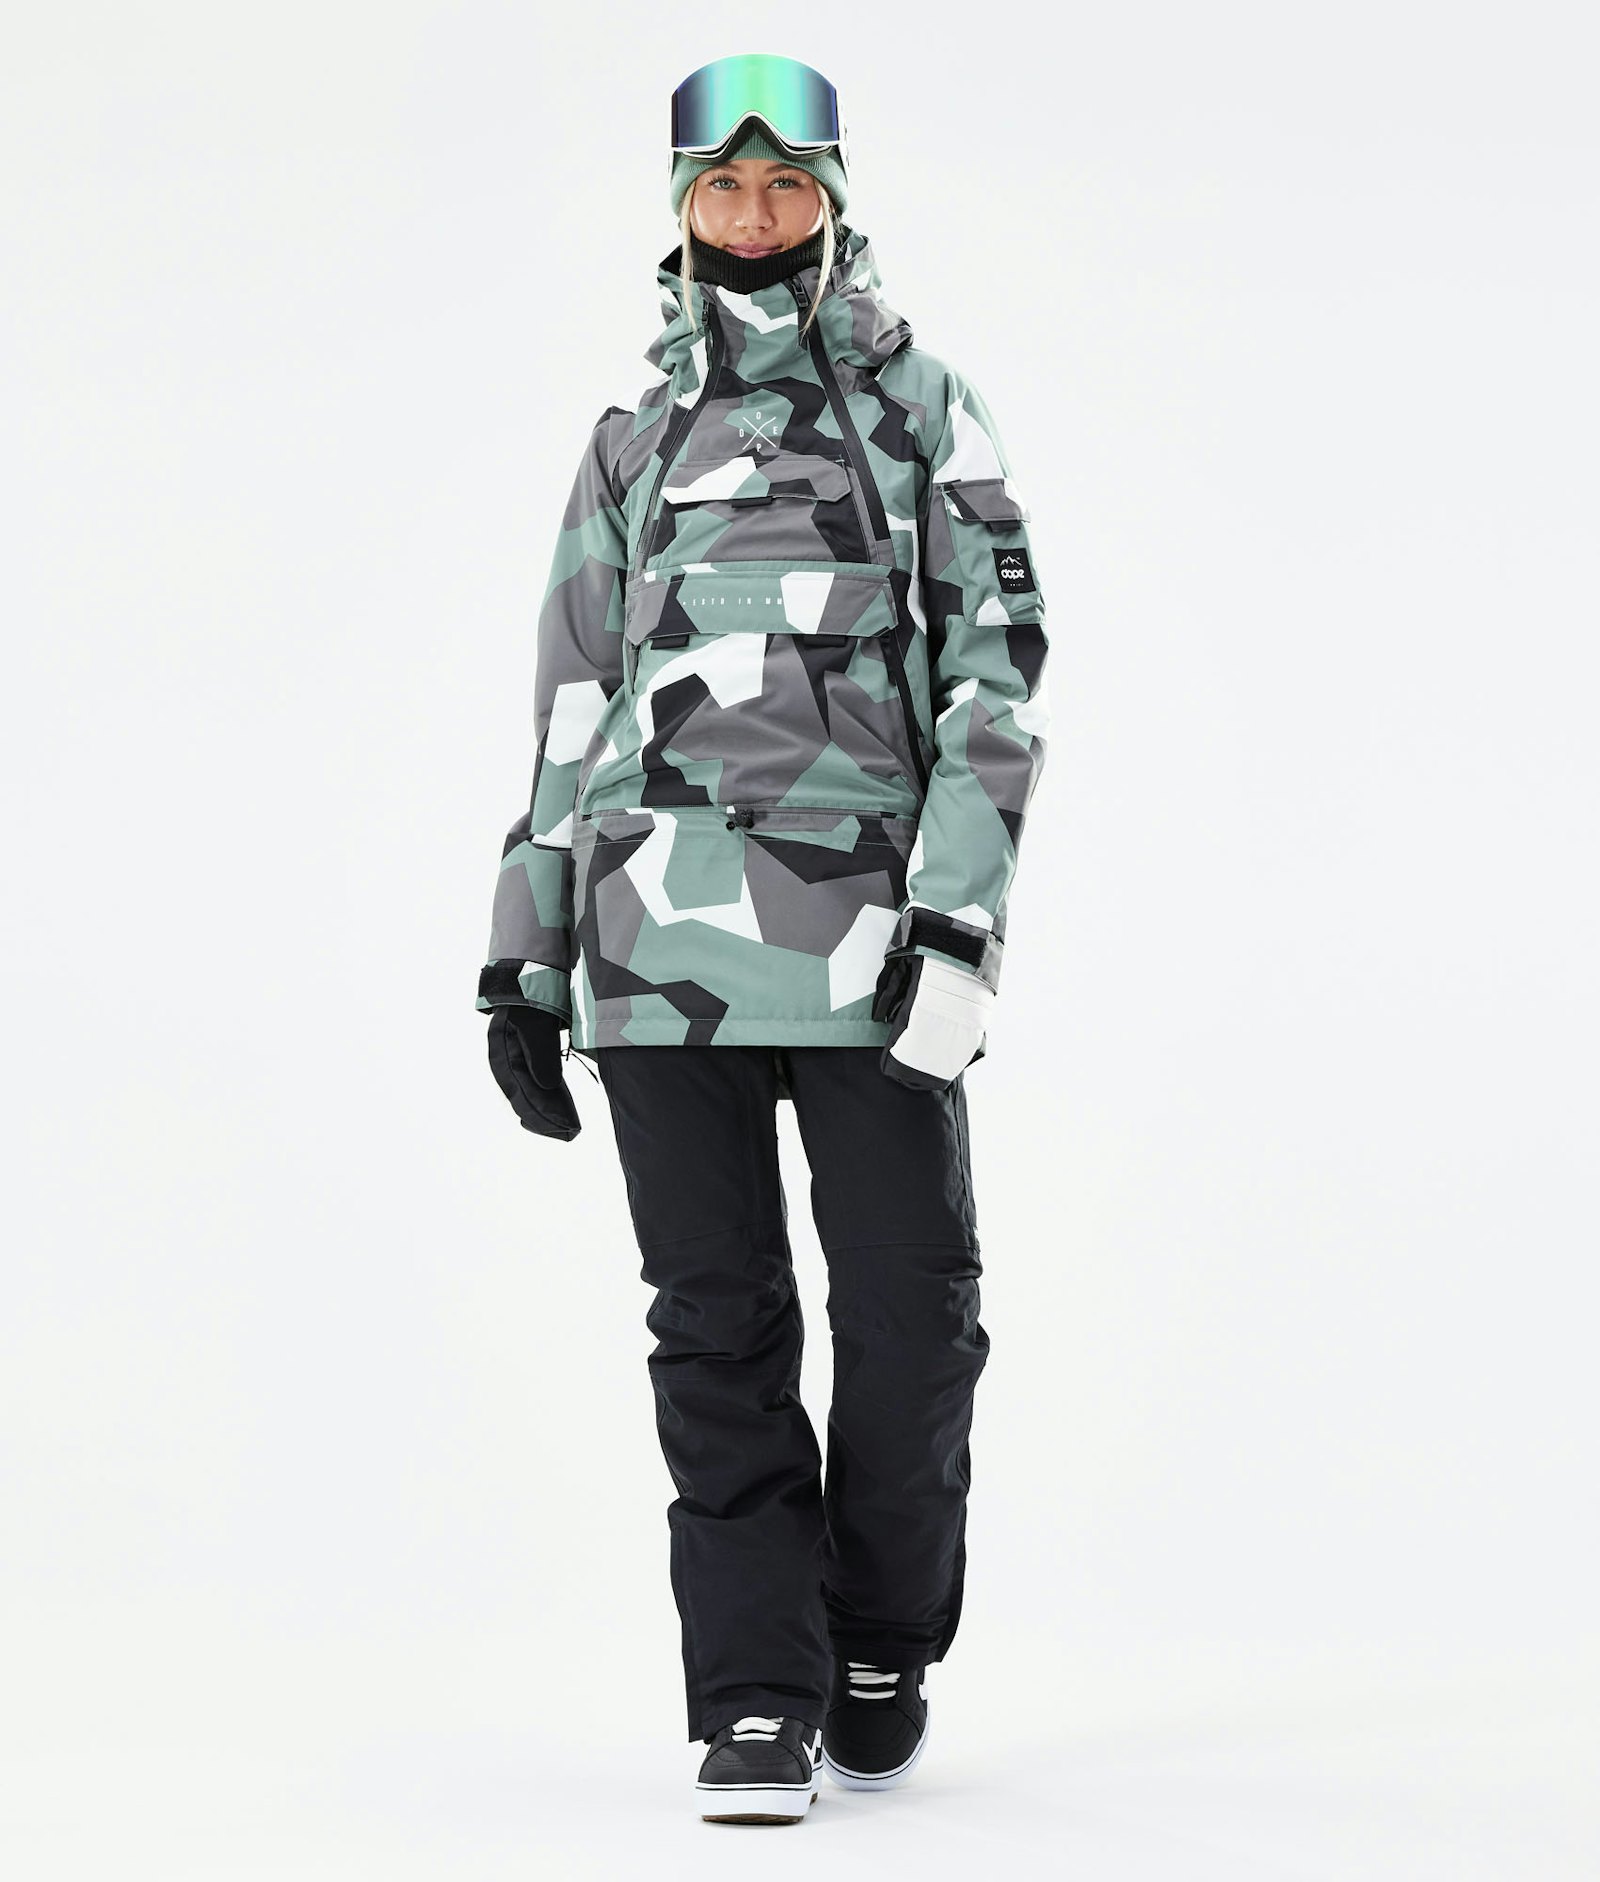 Akin W 2020 Snowboard Jacket Women Faded Green Camo